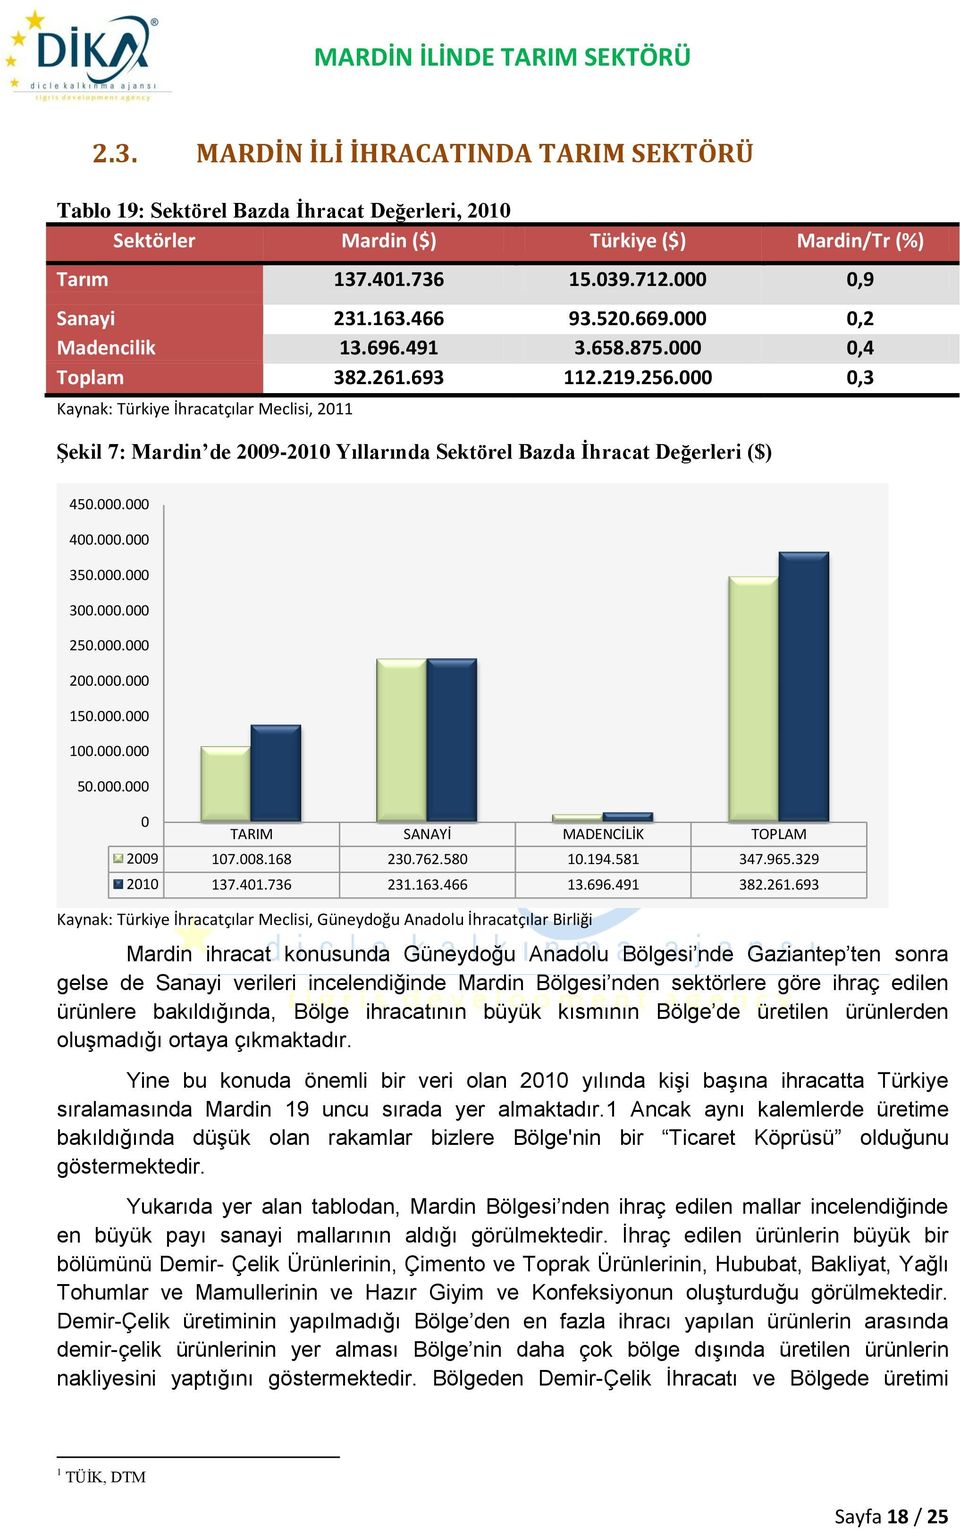 000 0,3 Kaynak: Türkiye İhracatçılar Meclisi, 2011 Şekil 7: Mardin de 2009-2010 Yıllarında Sektörel Bazda İhracat Değerleri ($) 450.000.000 400.000.000 350.000.000 300.000.000 250.000.000 200.000.000 150.